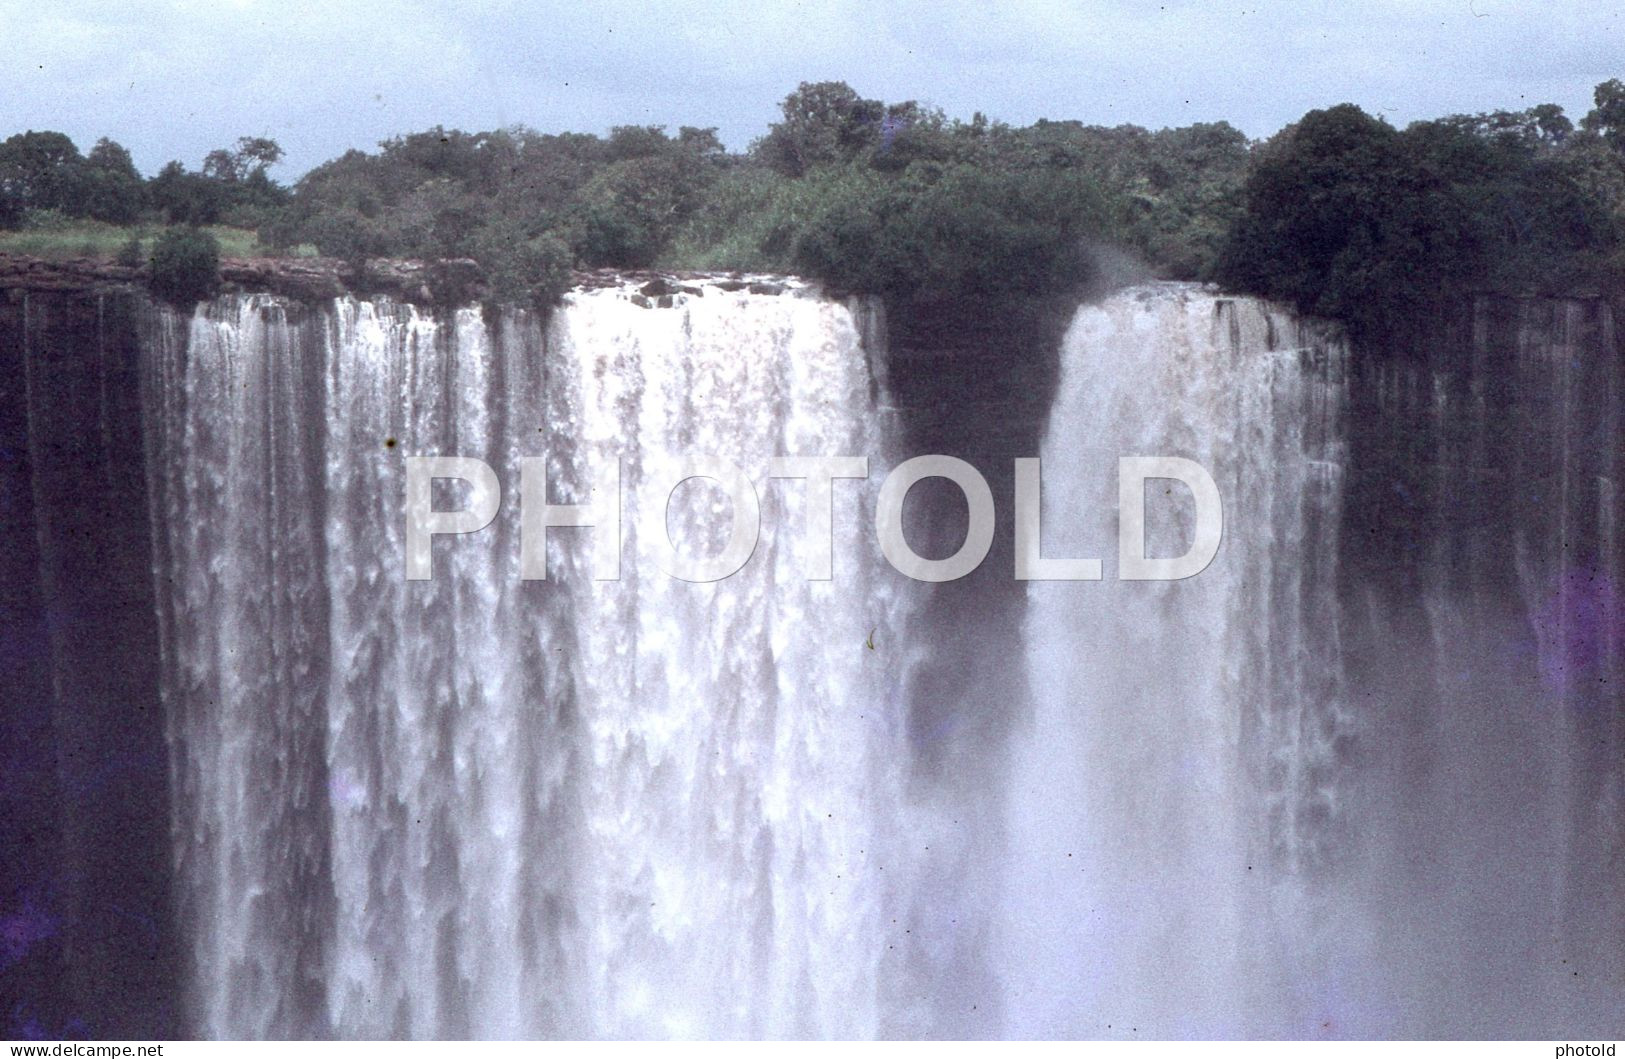 44 SLIDES SET 1968 ANGOLA AFRICA AFRIQUE ORIGINAL AMATEUR 35mm DIAPOSITIVE SLIDE Not PHOTO No FOTO NB4060 - Diapositives (slides)